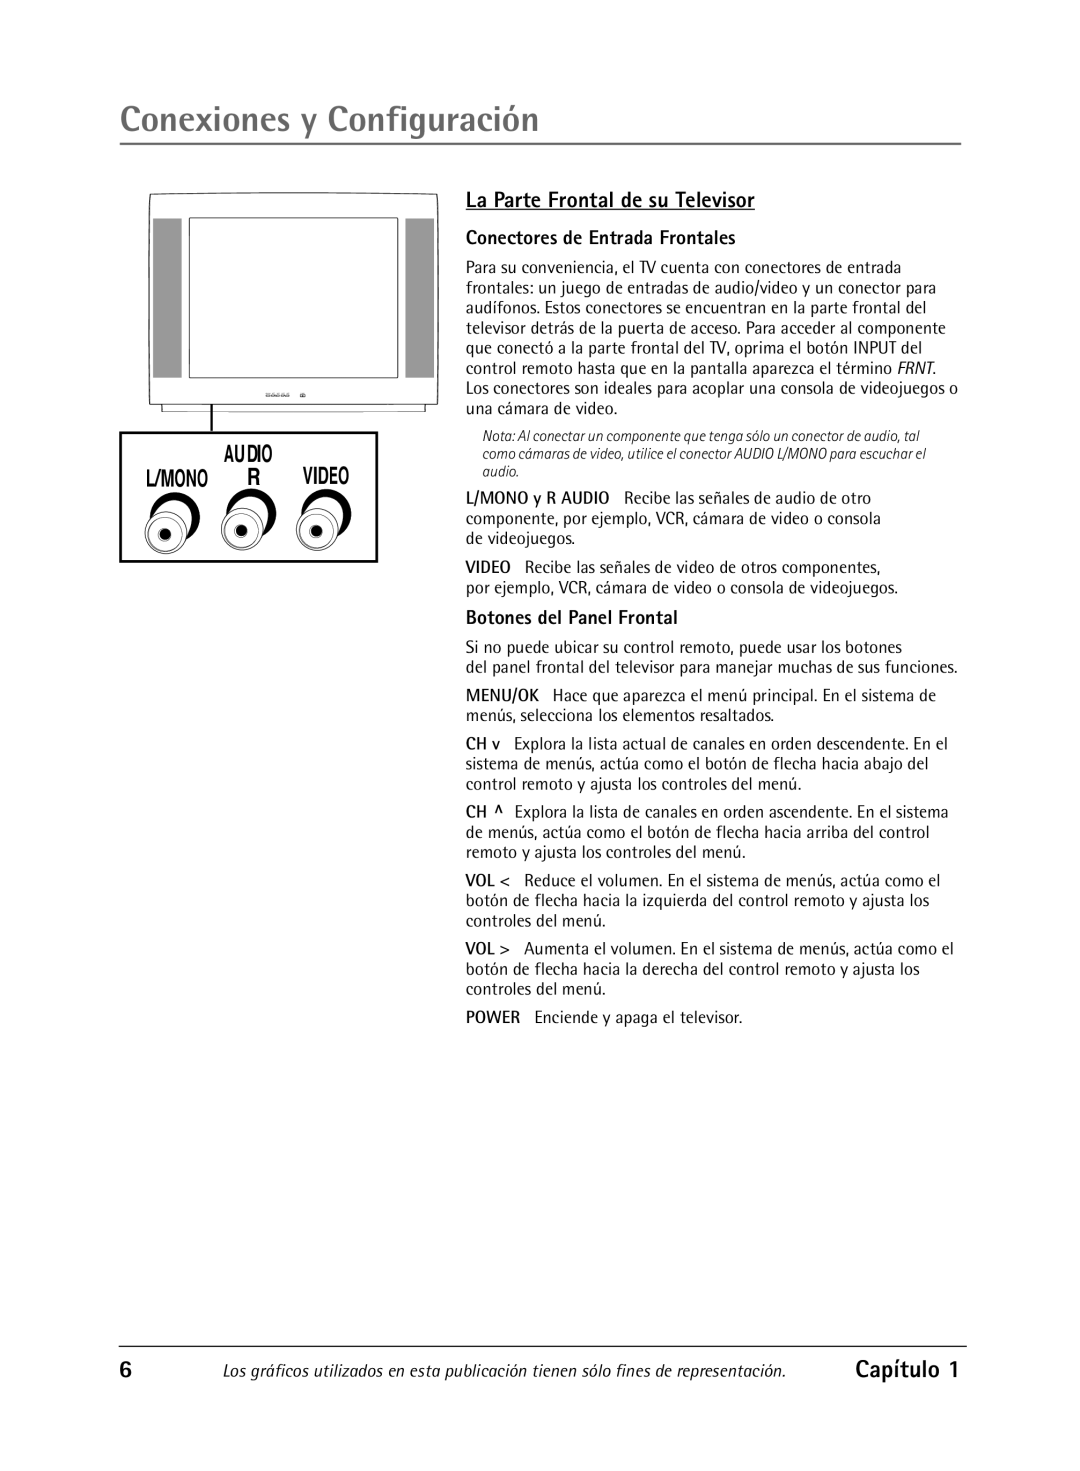 RCA Televison manual La Parte Frontal de su Televisor, Conectores de Entrada Frontales, Botones del Panel Frontal, Capítulo 